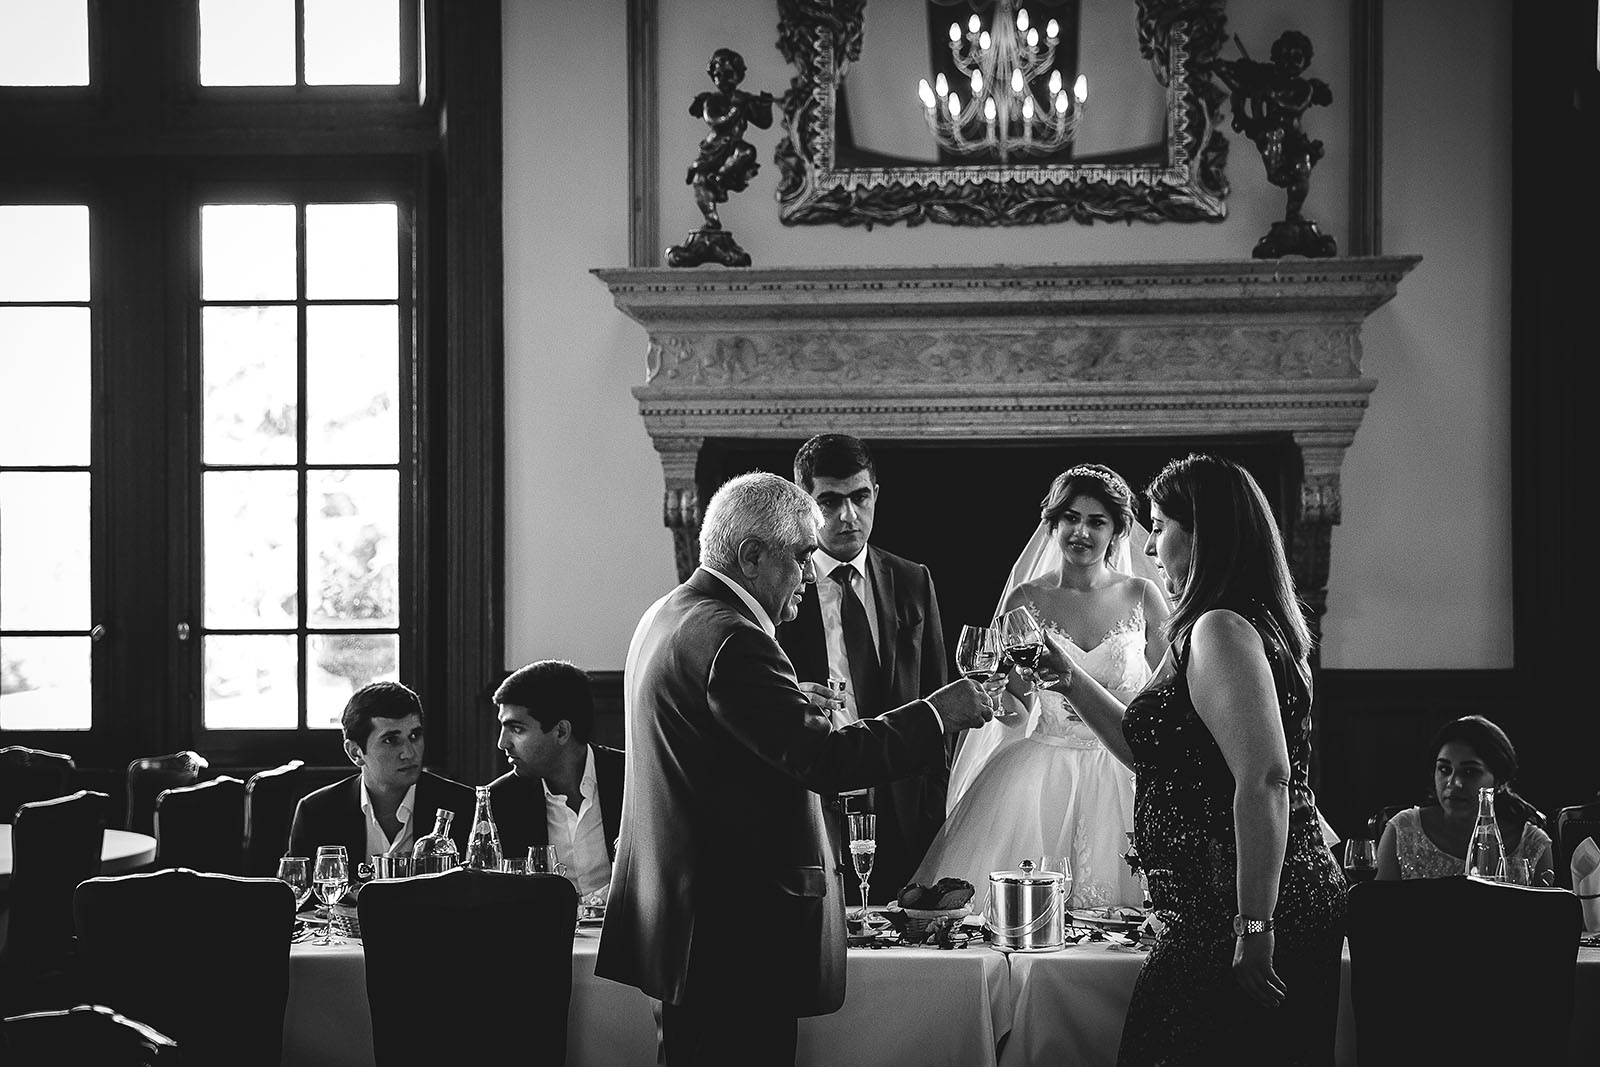 Mariage au Château de Beguin David Pommier photographe de mariage. Les mariés trinquent avec leur parent